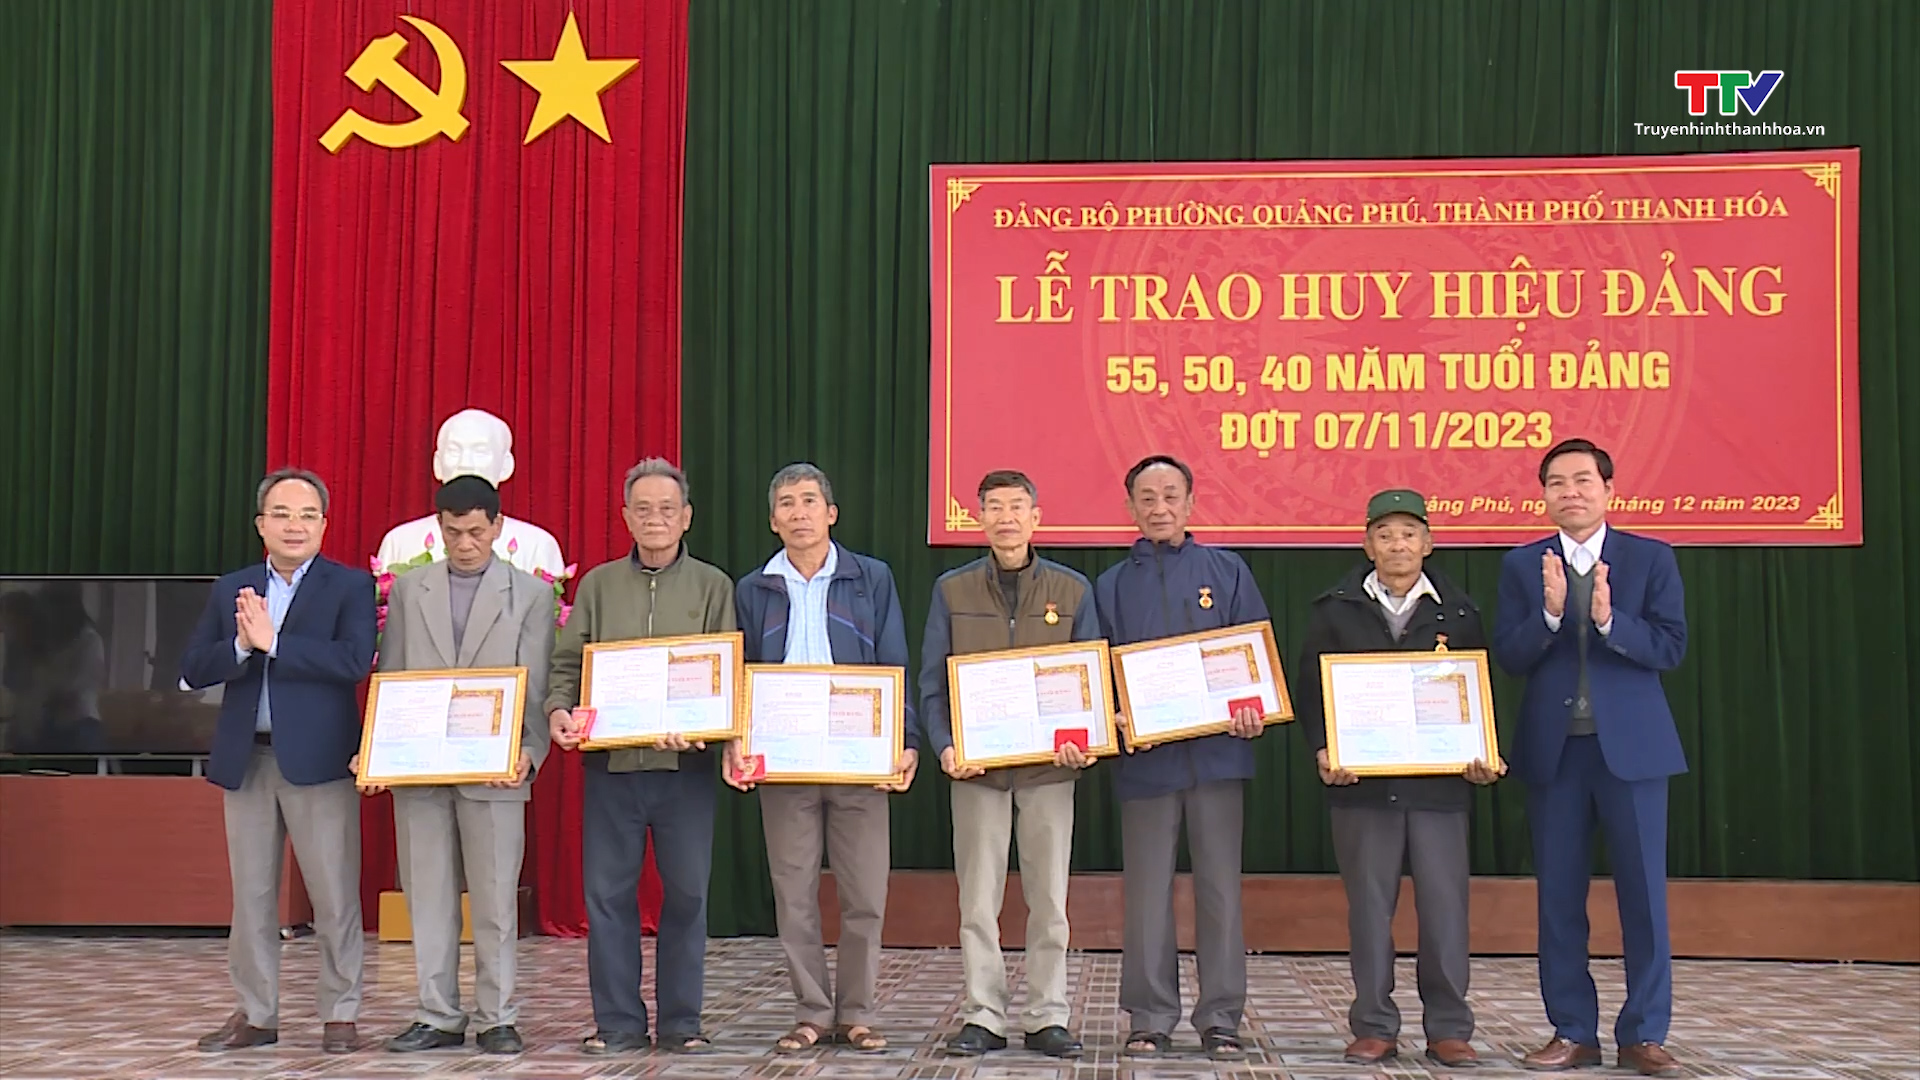 Tin tổng hợp hoạt động chính trị, kinh tế, văn hóa, xã hội trên địa bàn thành phố Thanh Hóa ngày 3/1/2024- Ảnh 2.